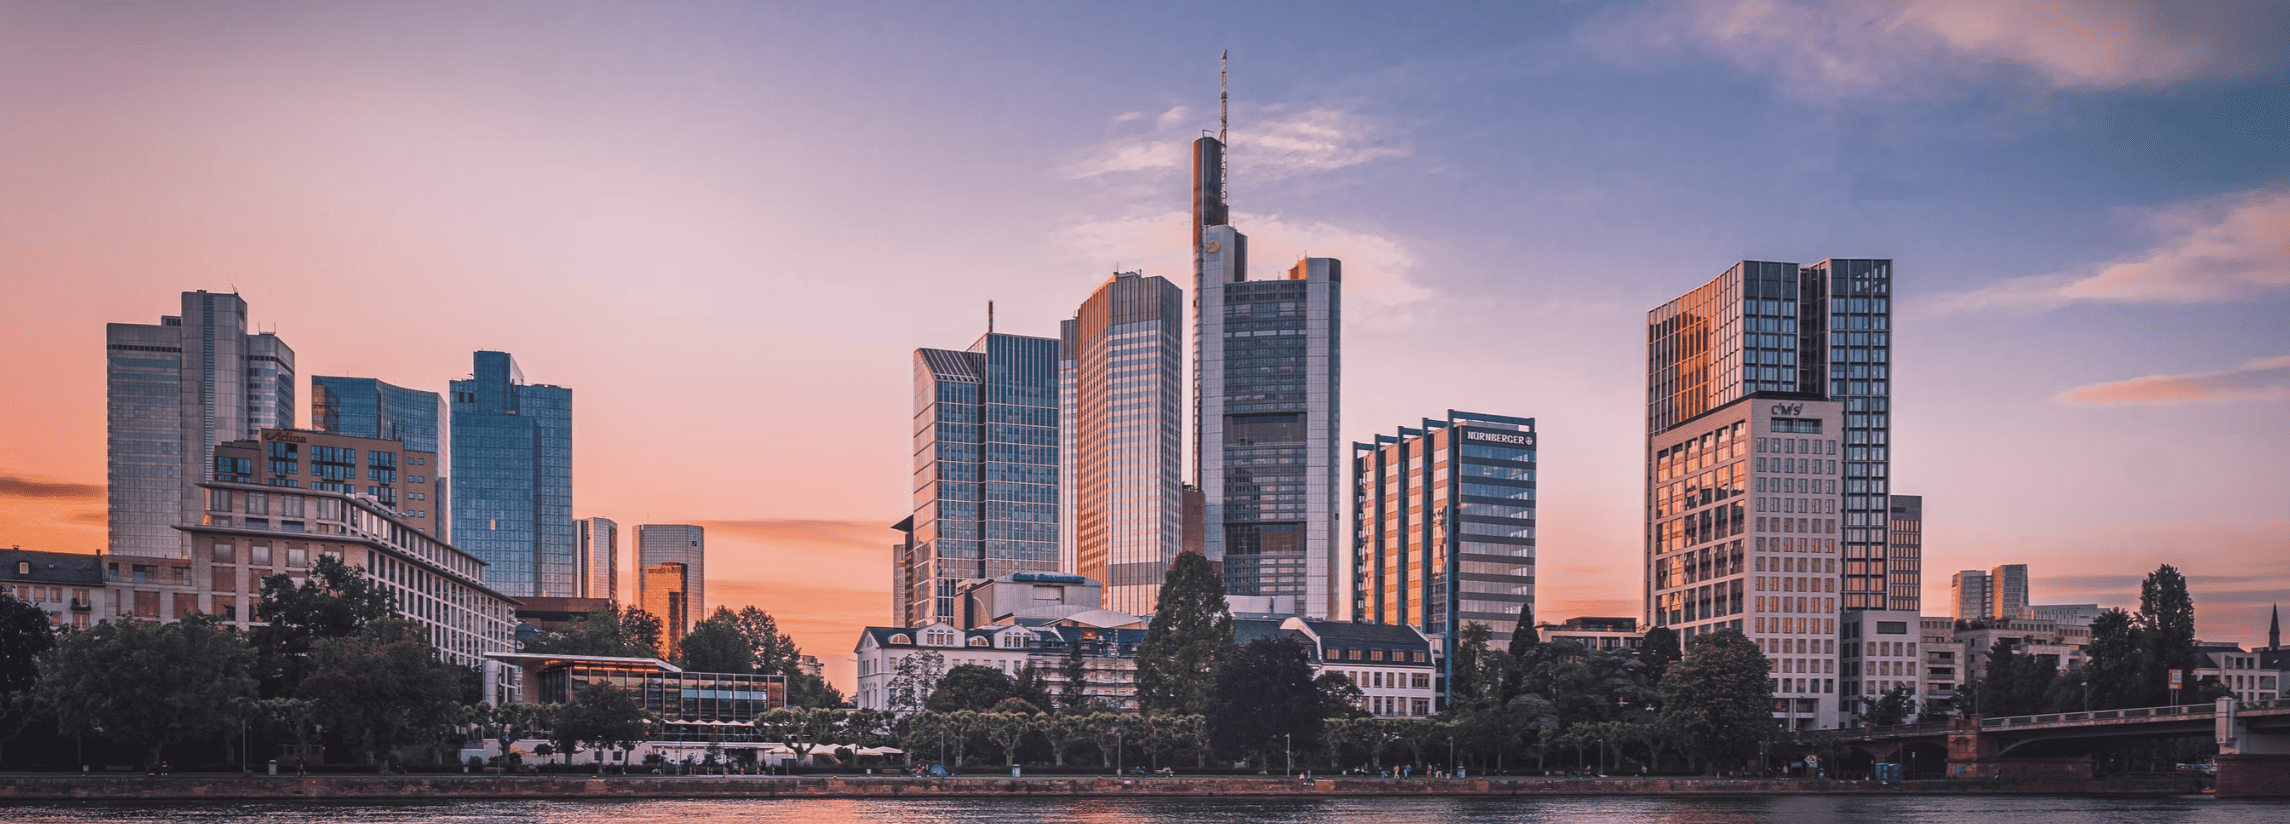 Liste von 3 führenden Insolvenzverwaltern in Frankfurt